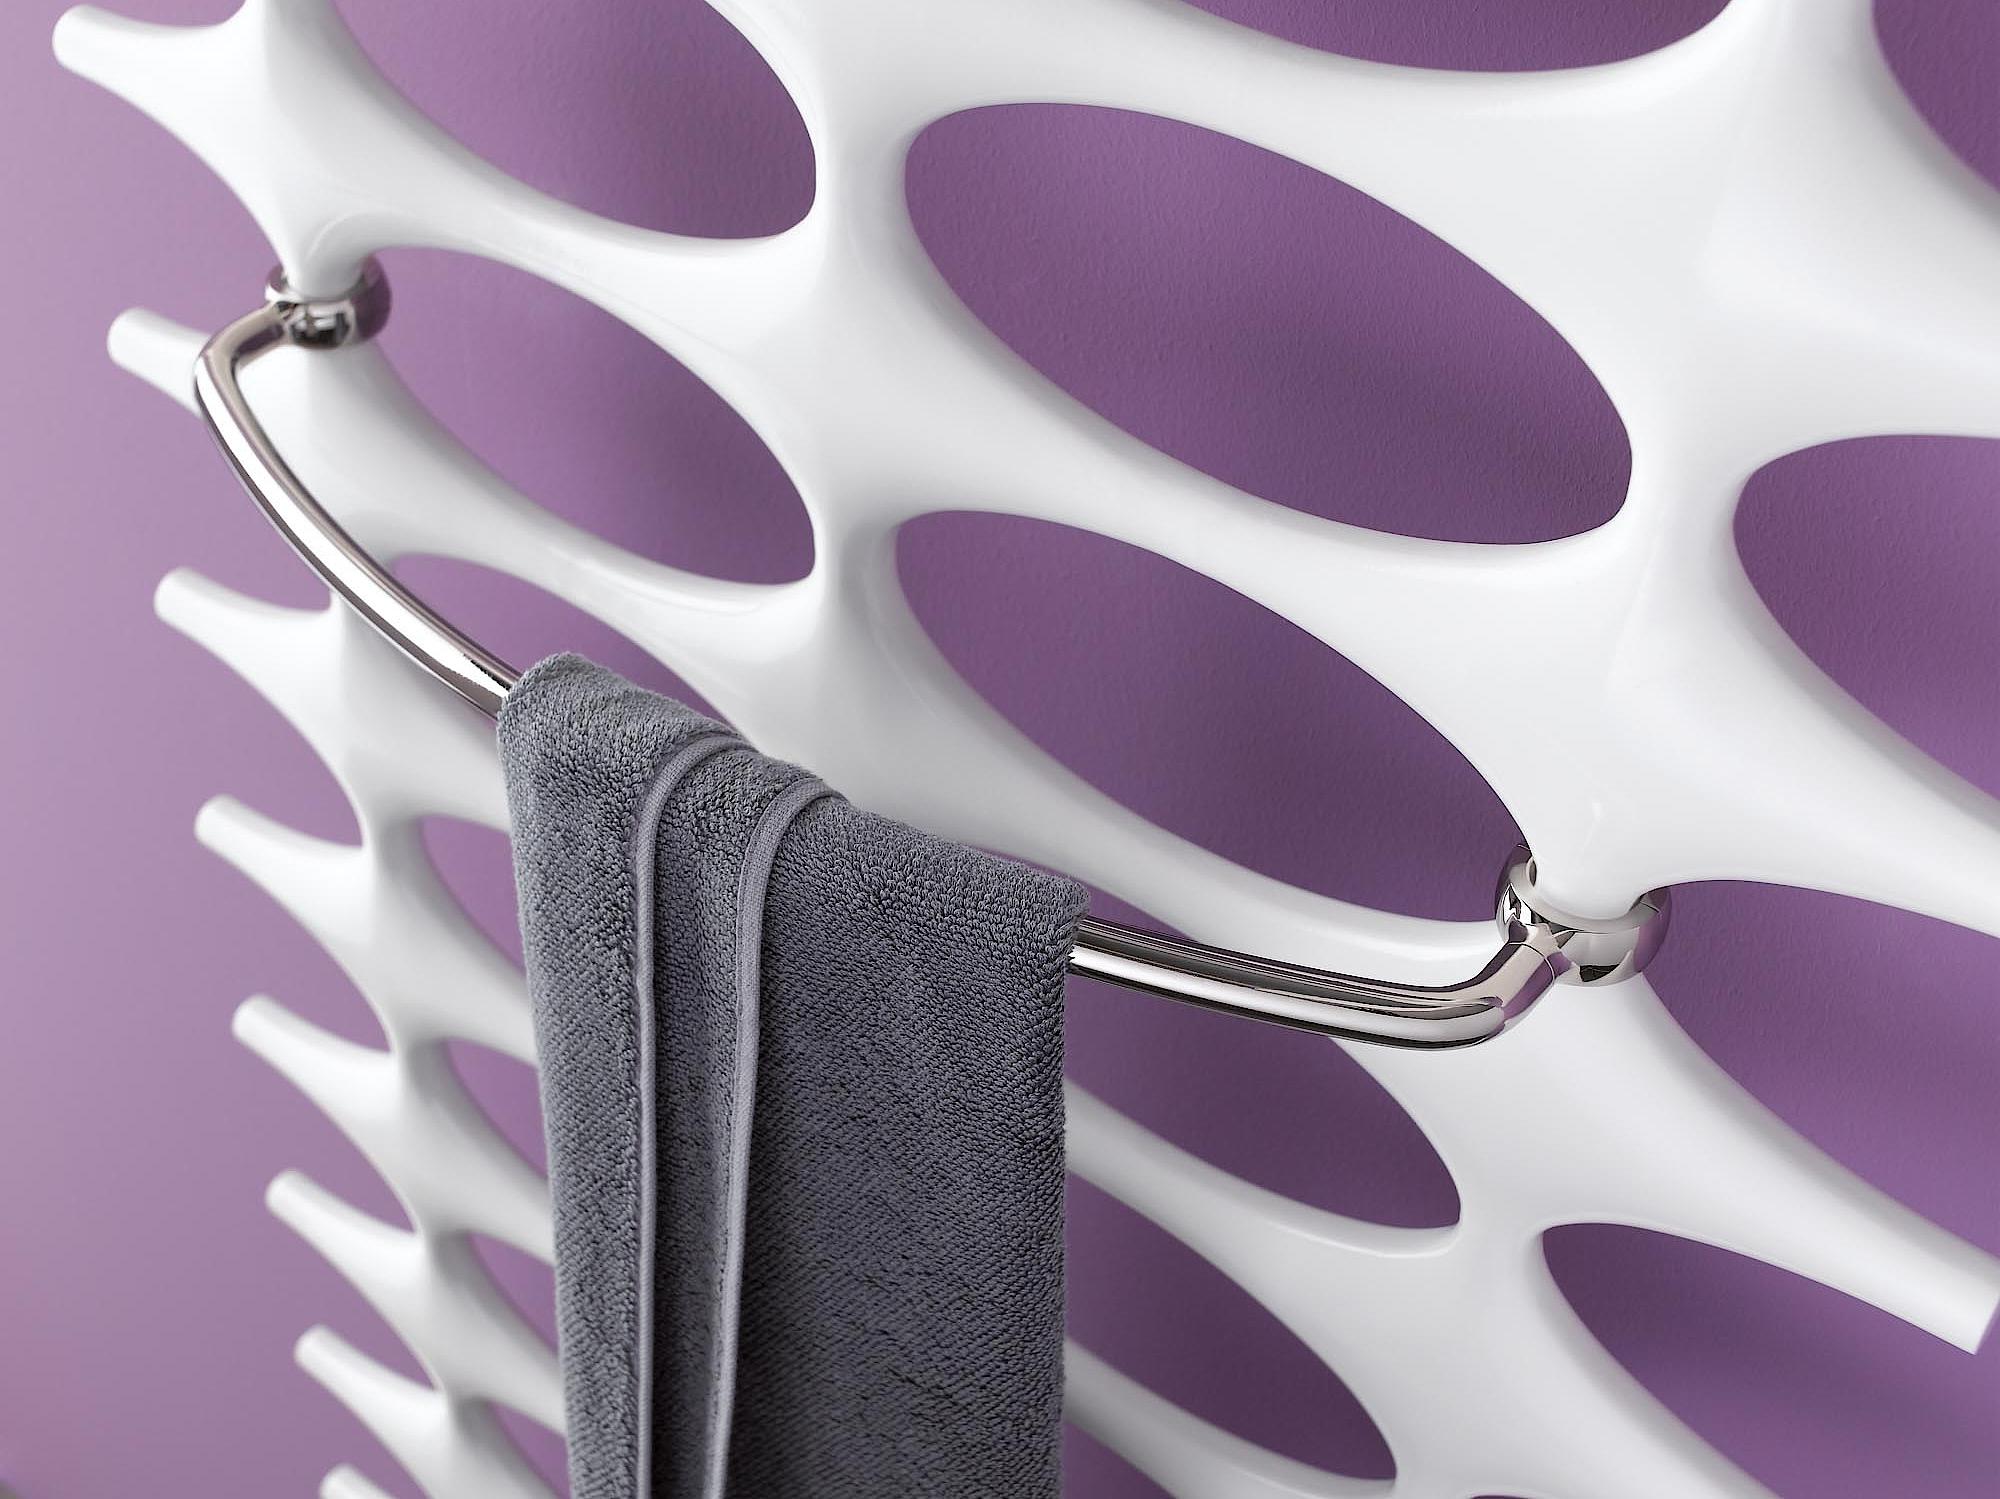 Radiateur design et de salle de bain Ideos de Kermi barre porte-serviettes.